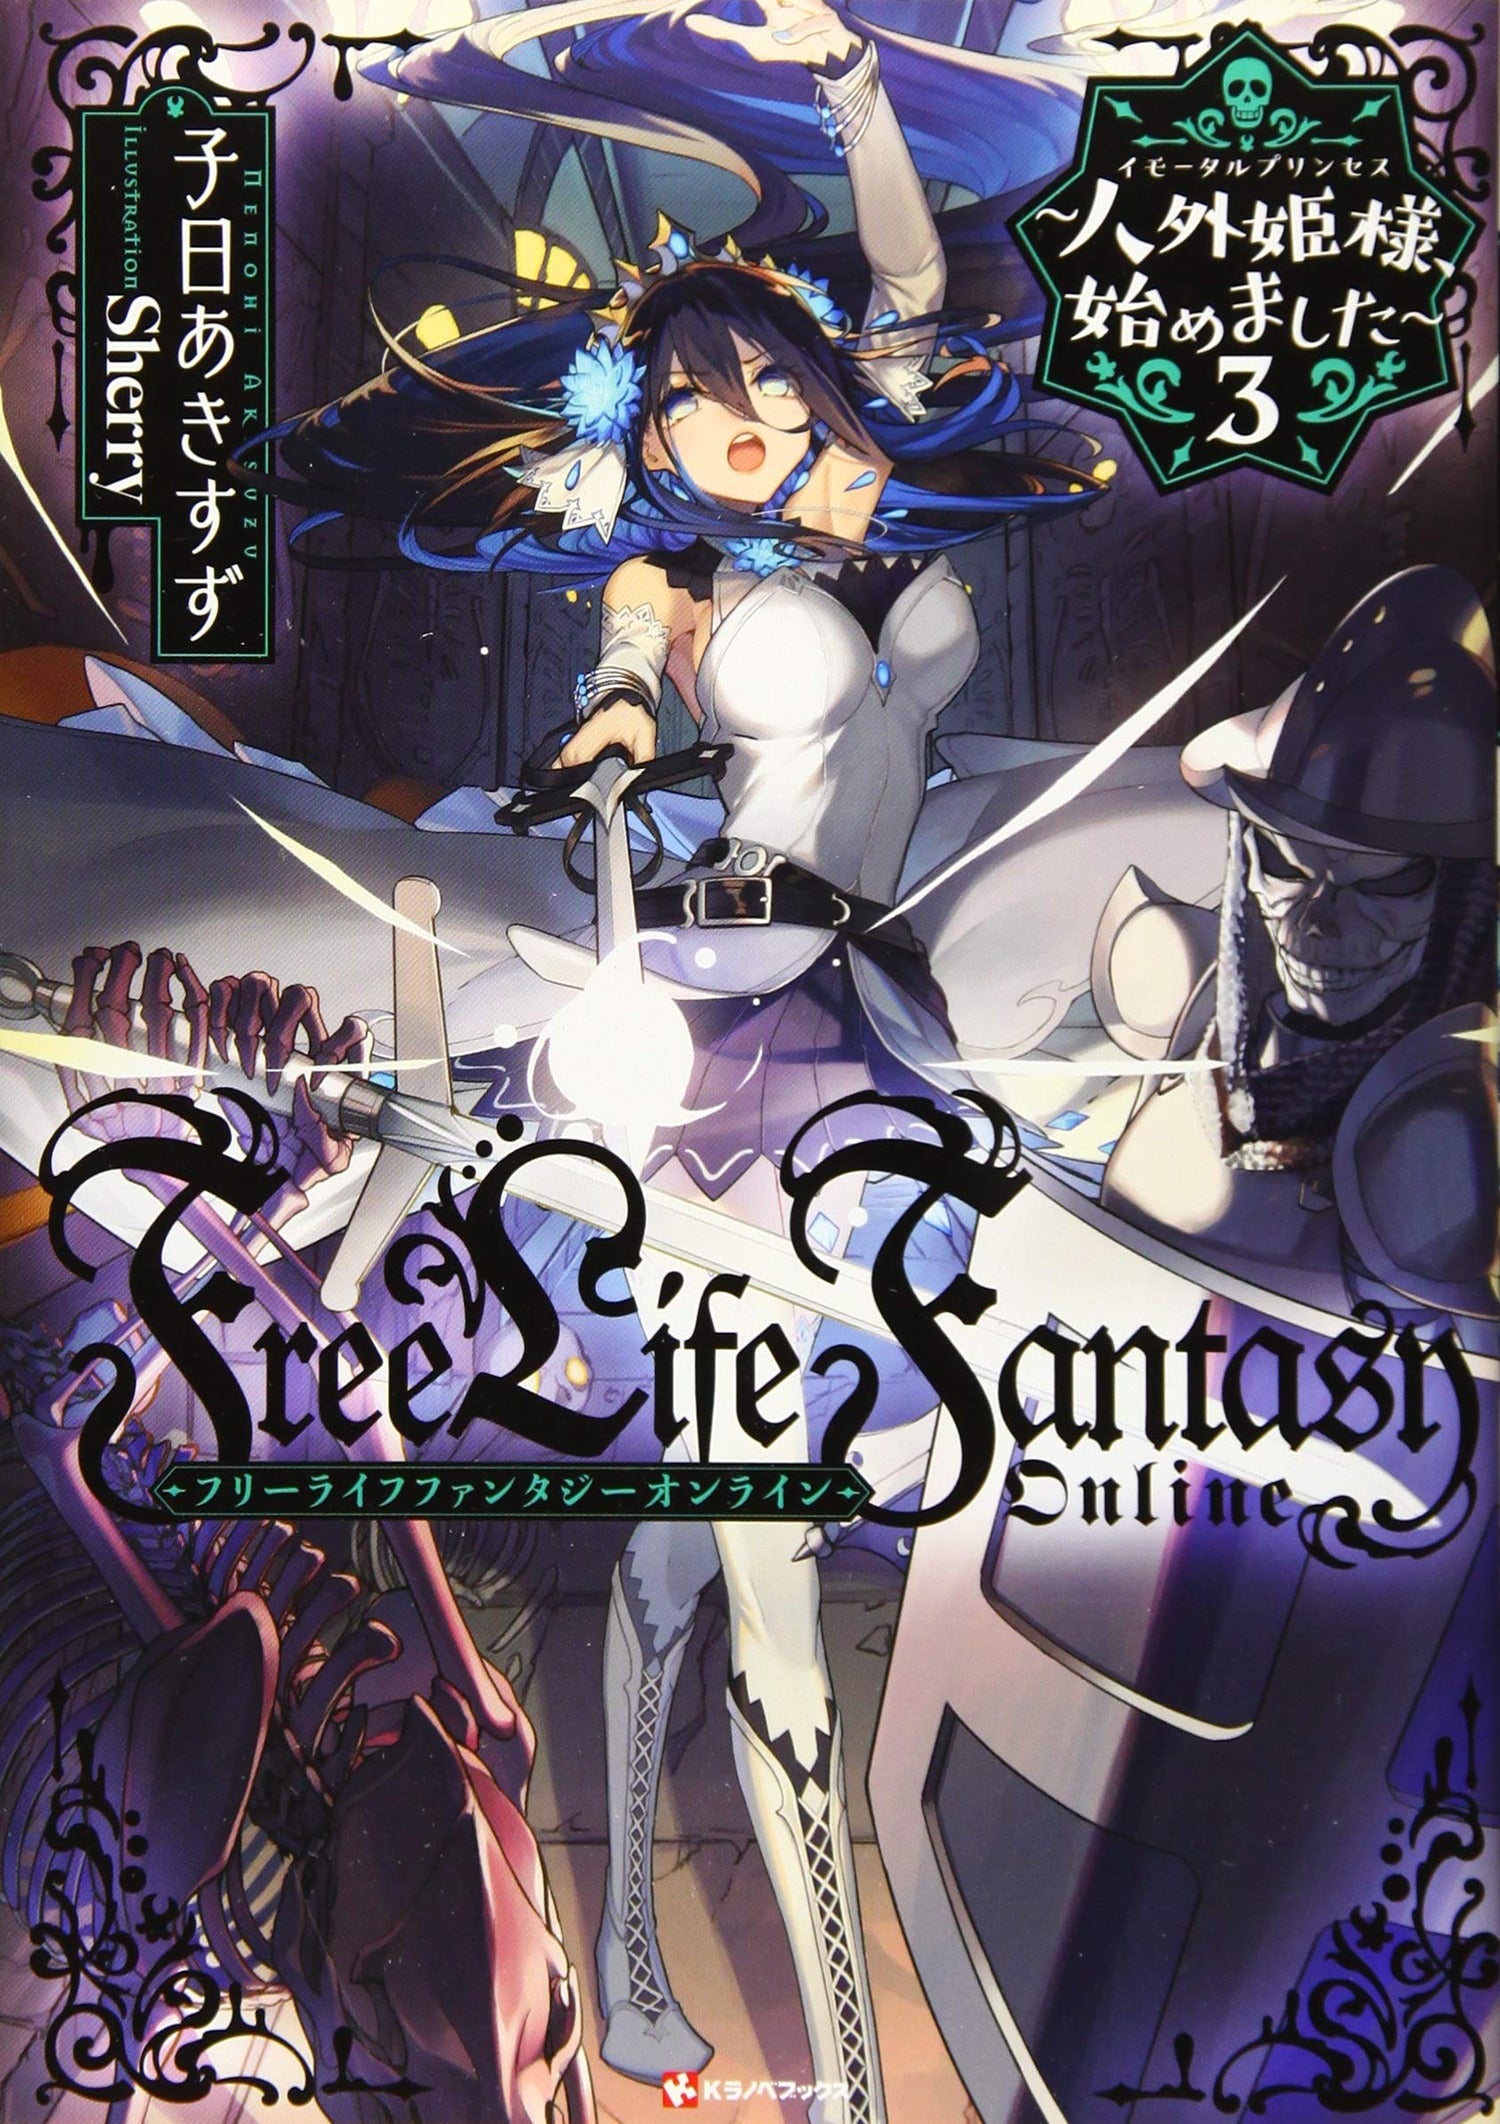 Free Life Fantasy Online Immortal Princess GN Vol 01